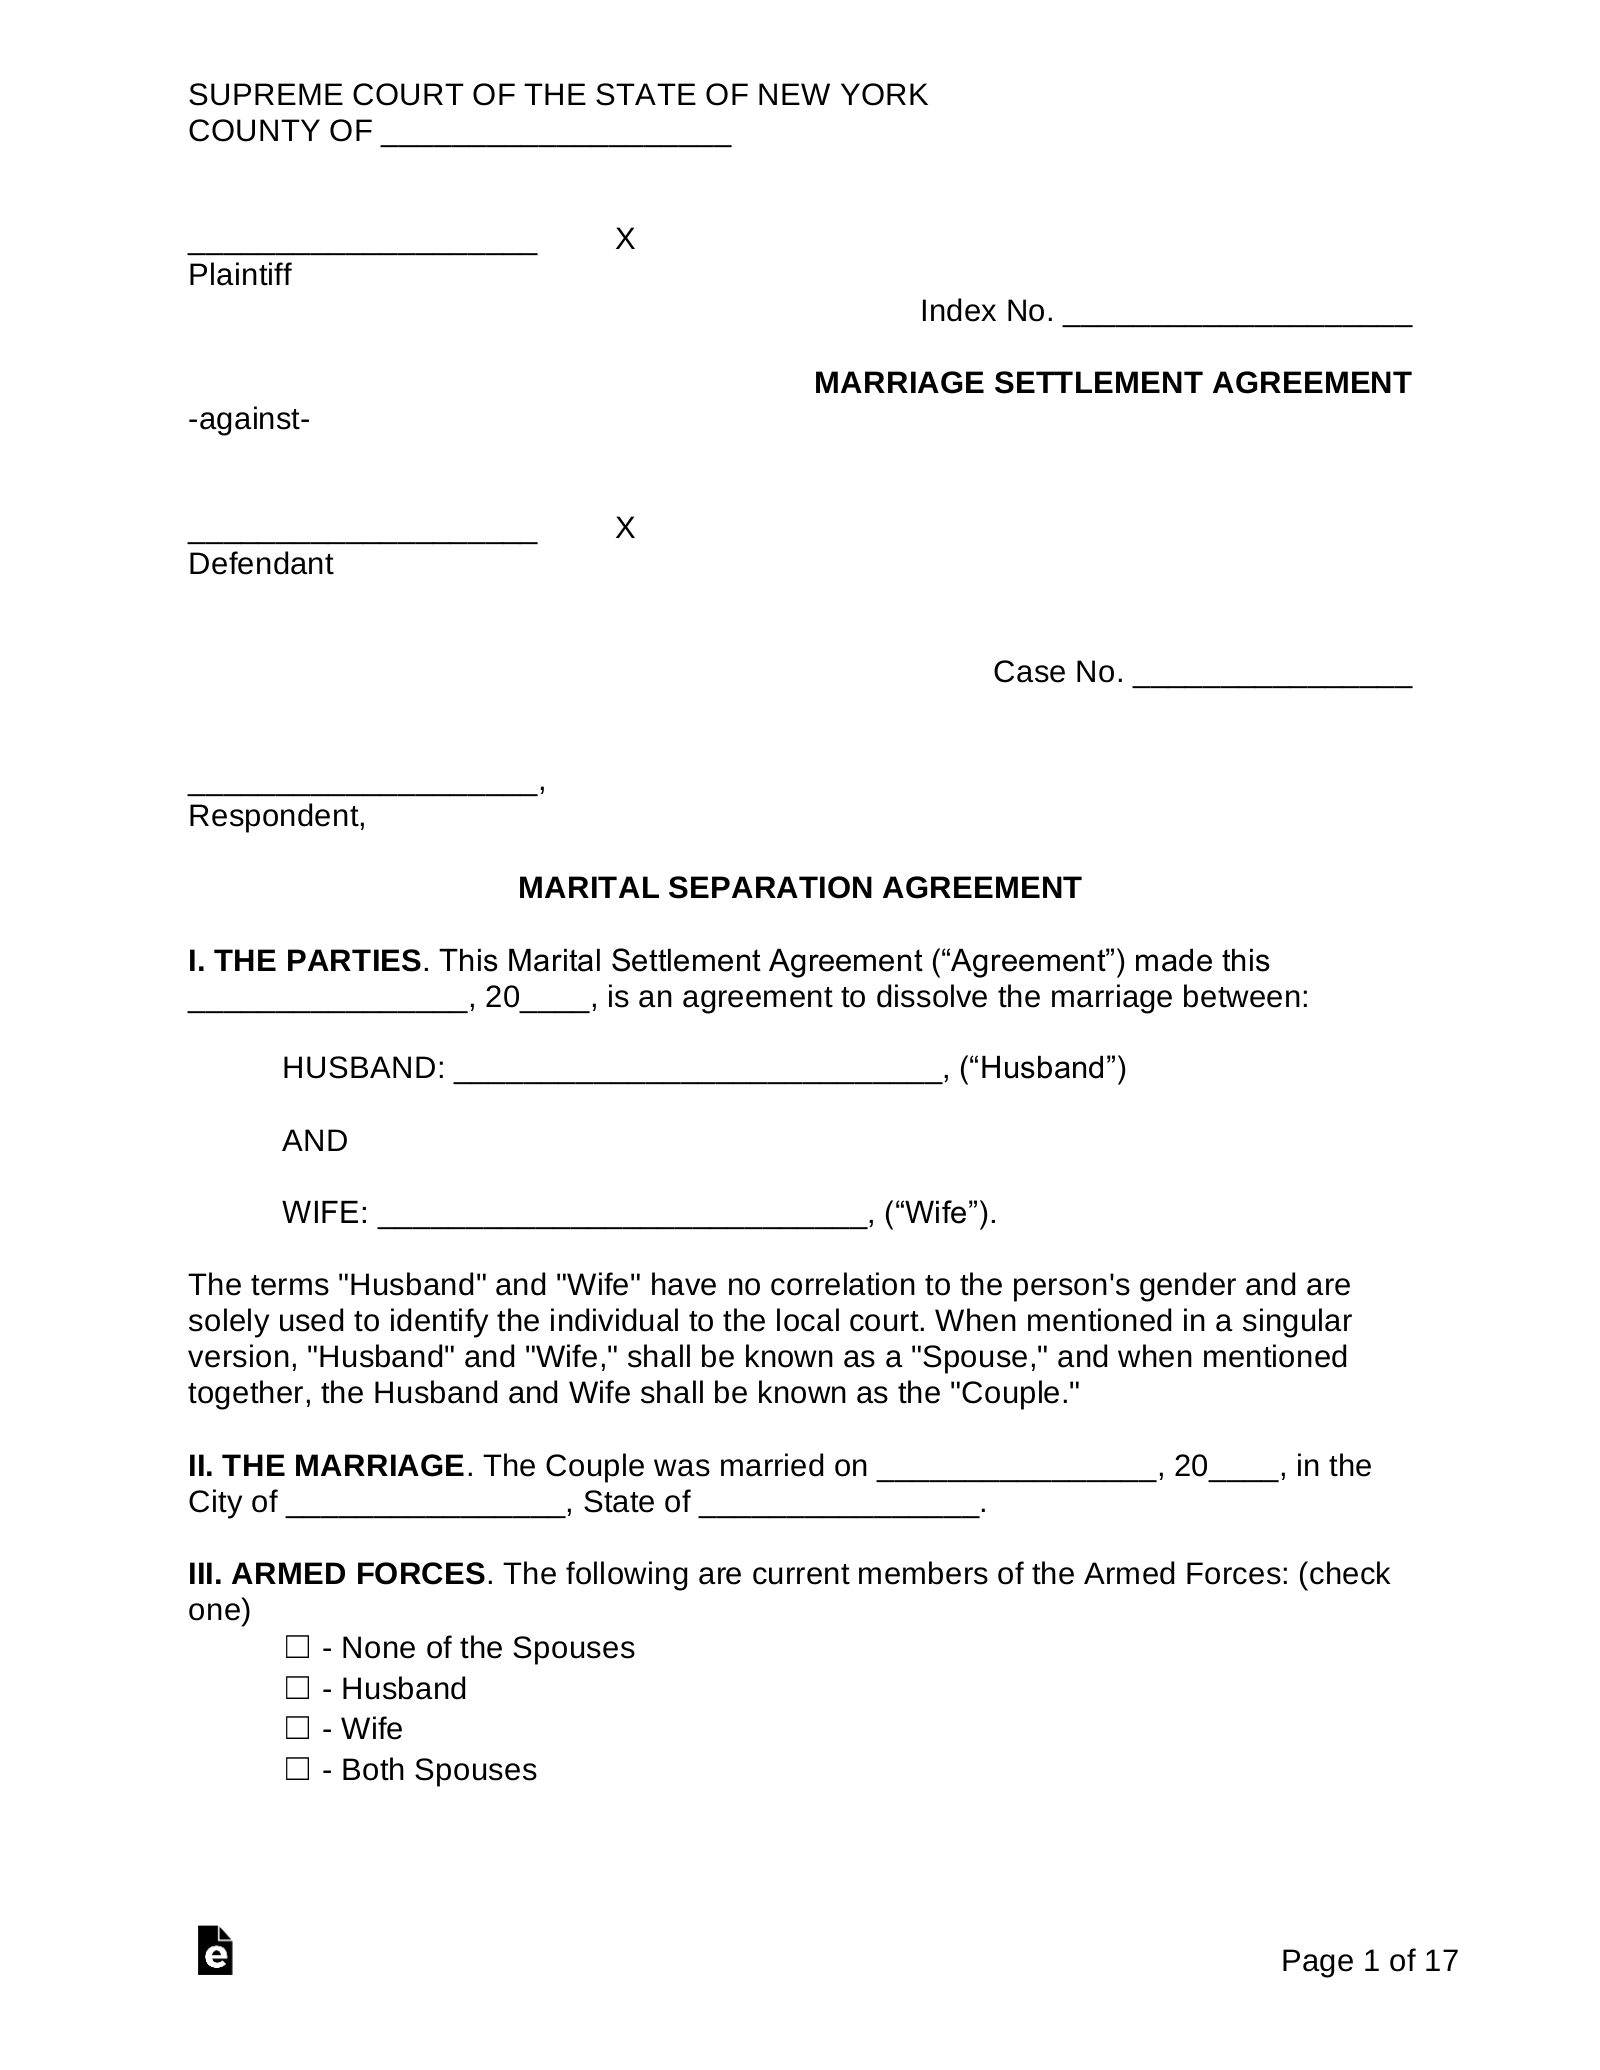 New York Marital Settlement (Divorce) Agreement